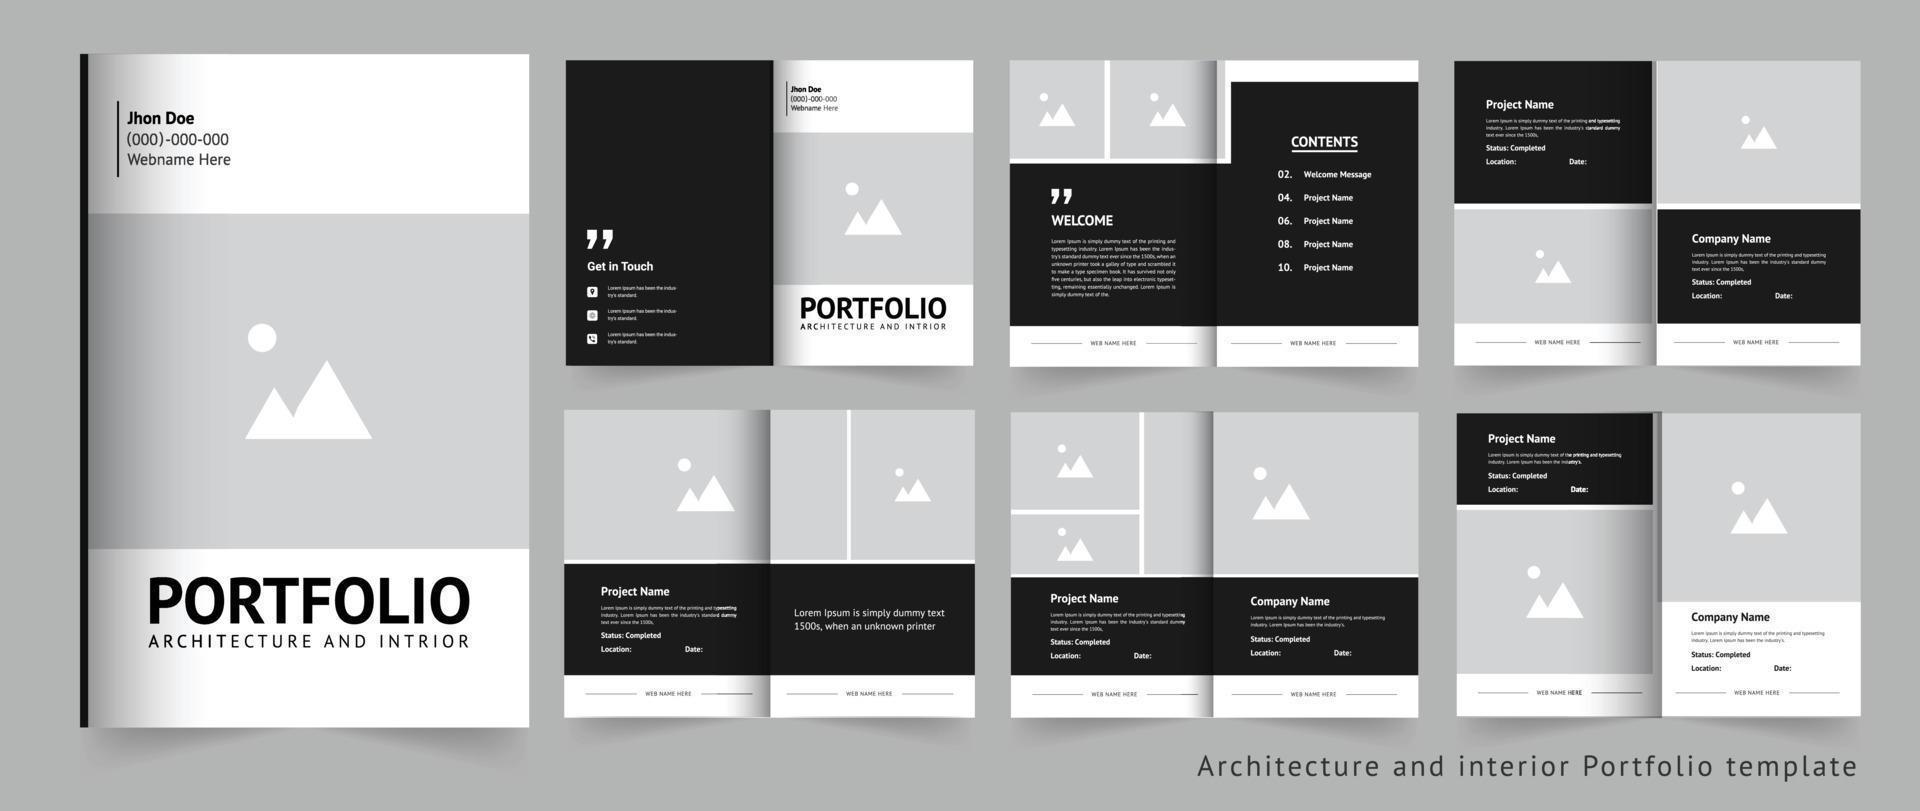 Portfolio design Architecture and interior Portfolio design template vector